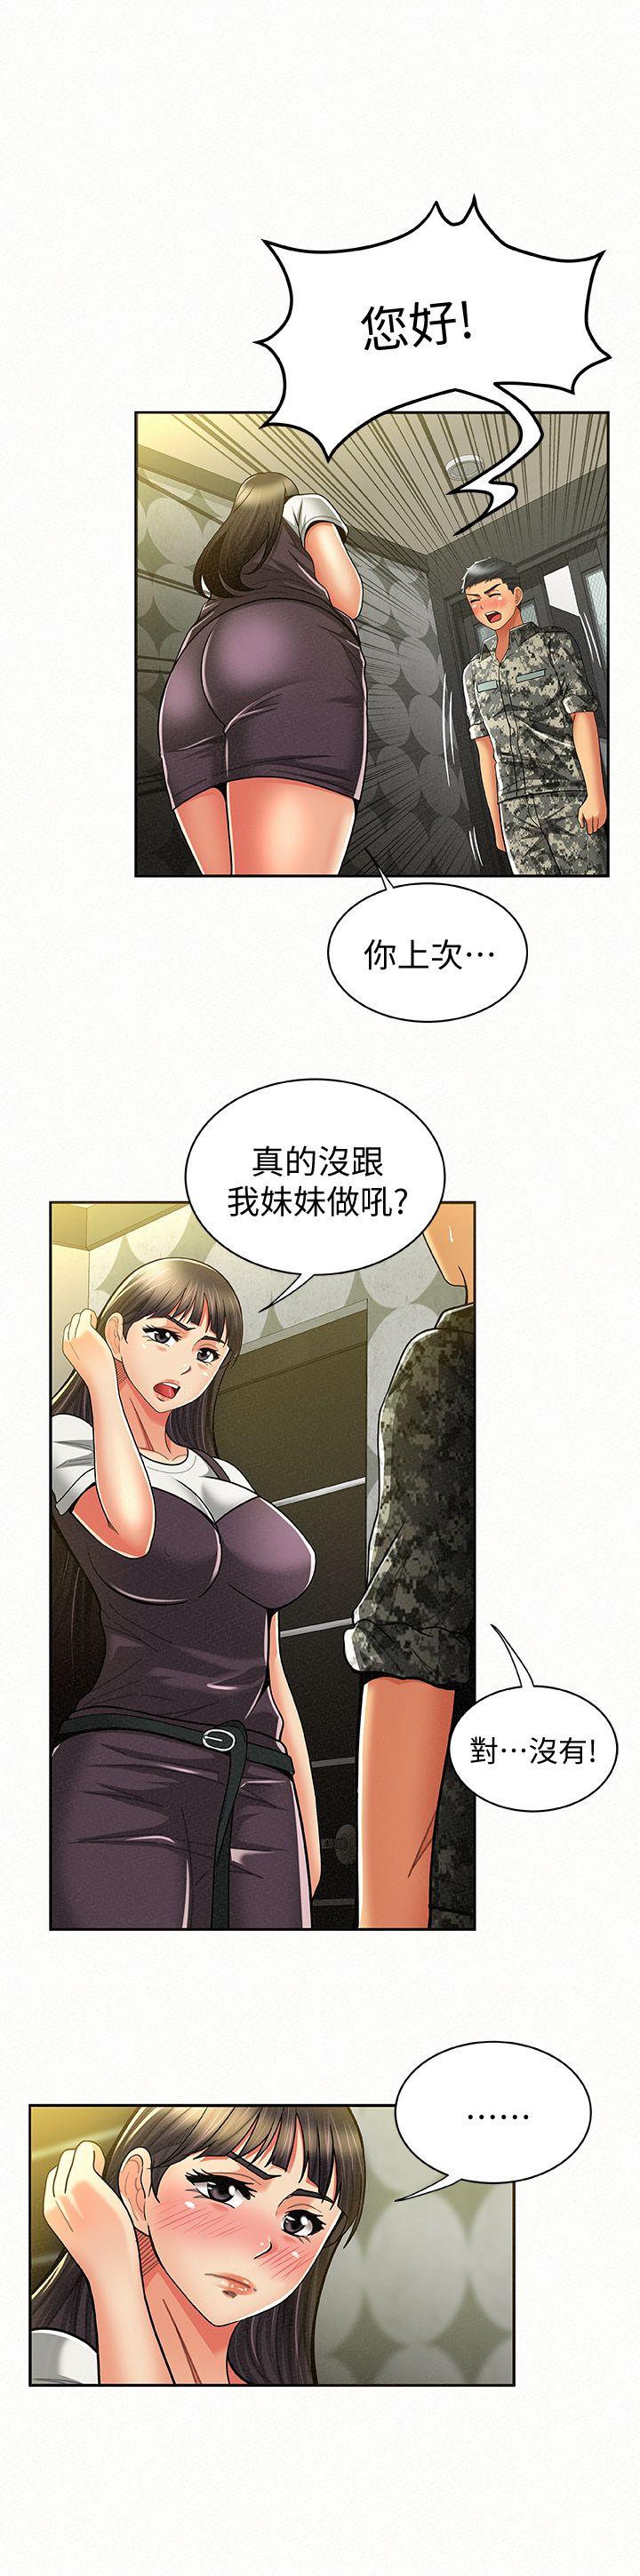 韩国污漫画 報告夫人 第10话-仁华的情色家教时间 6